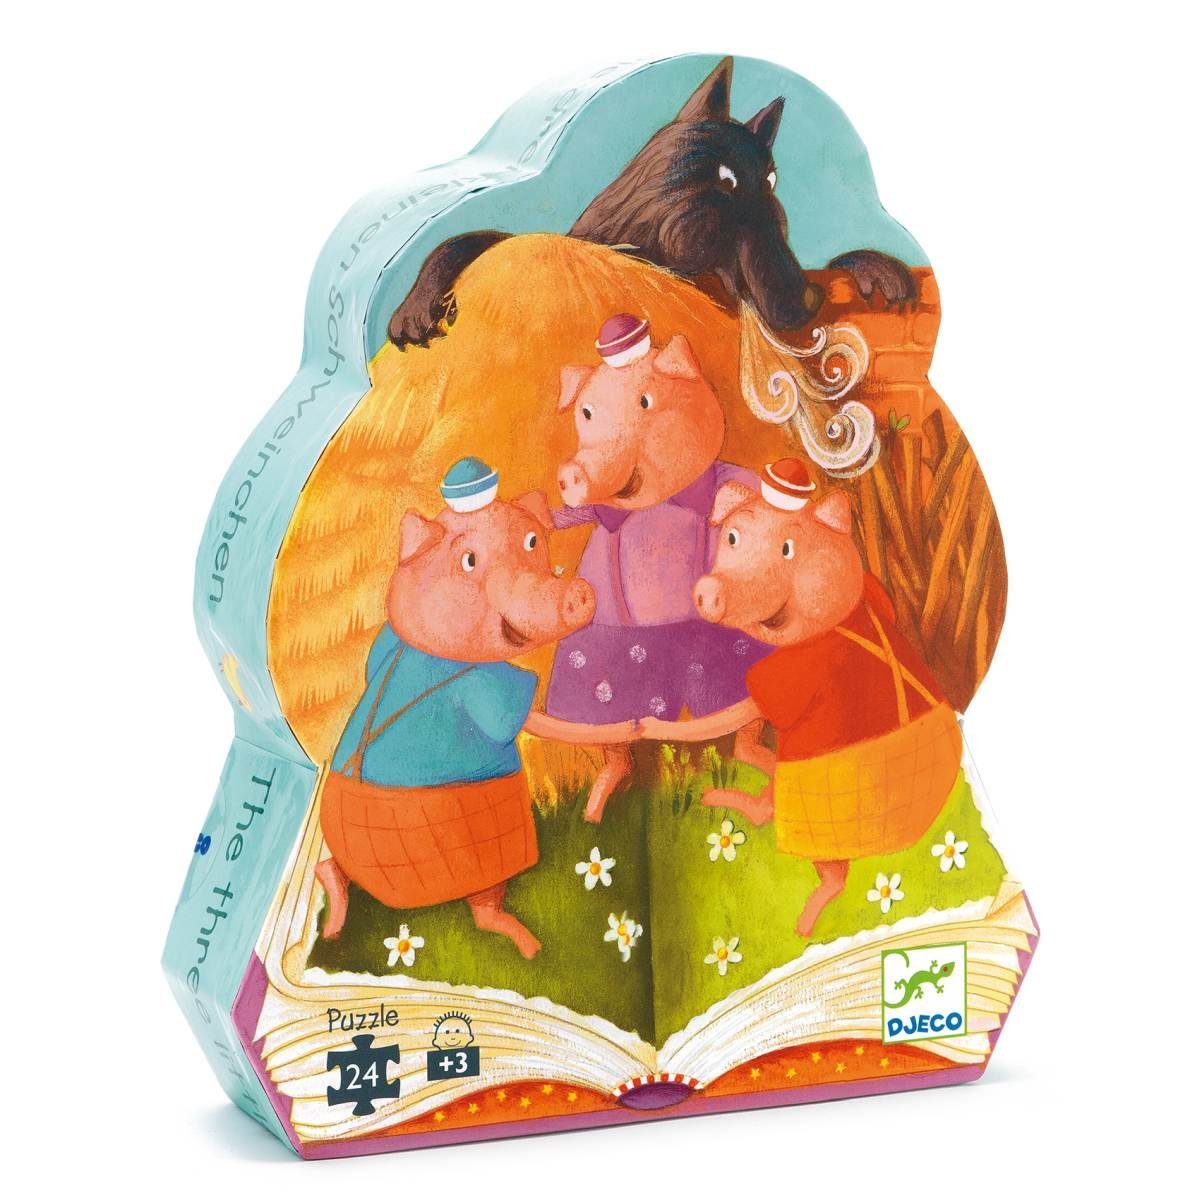 DJECO Rahmenpuzzle Märchen für Kinder ab 3 Jahren 62 x 20 cm, 24 Puzzleteile